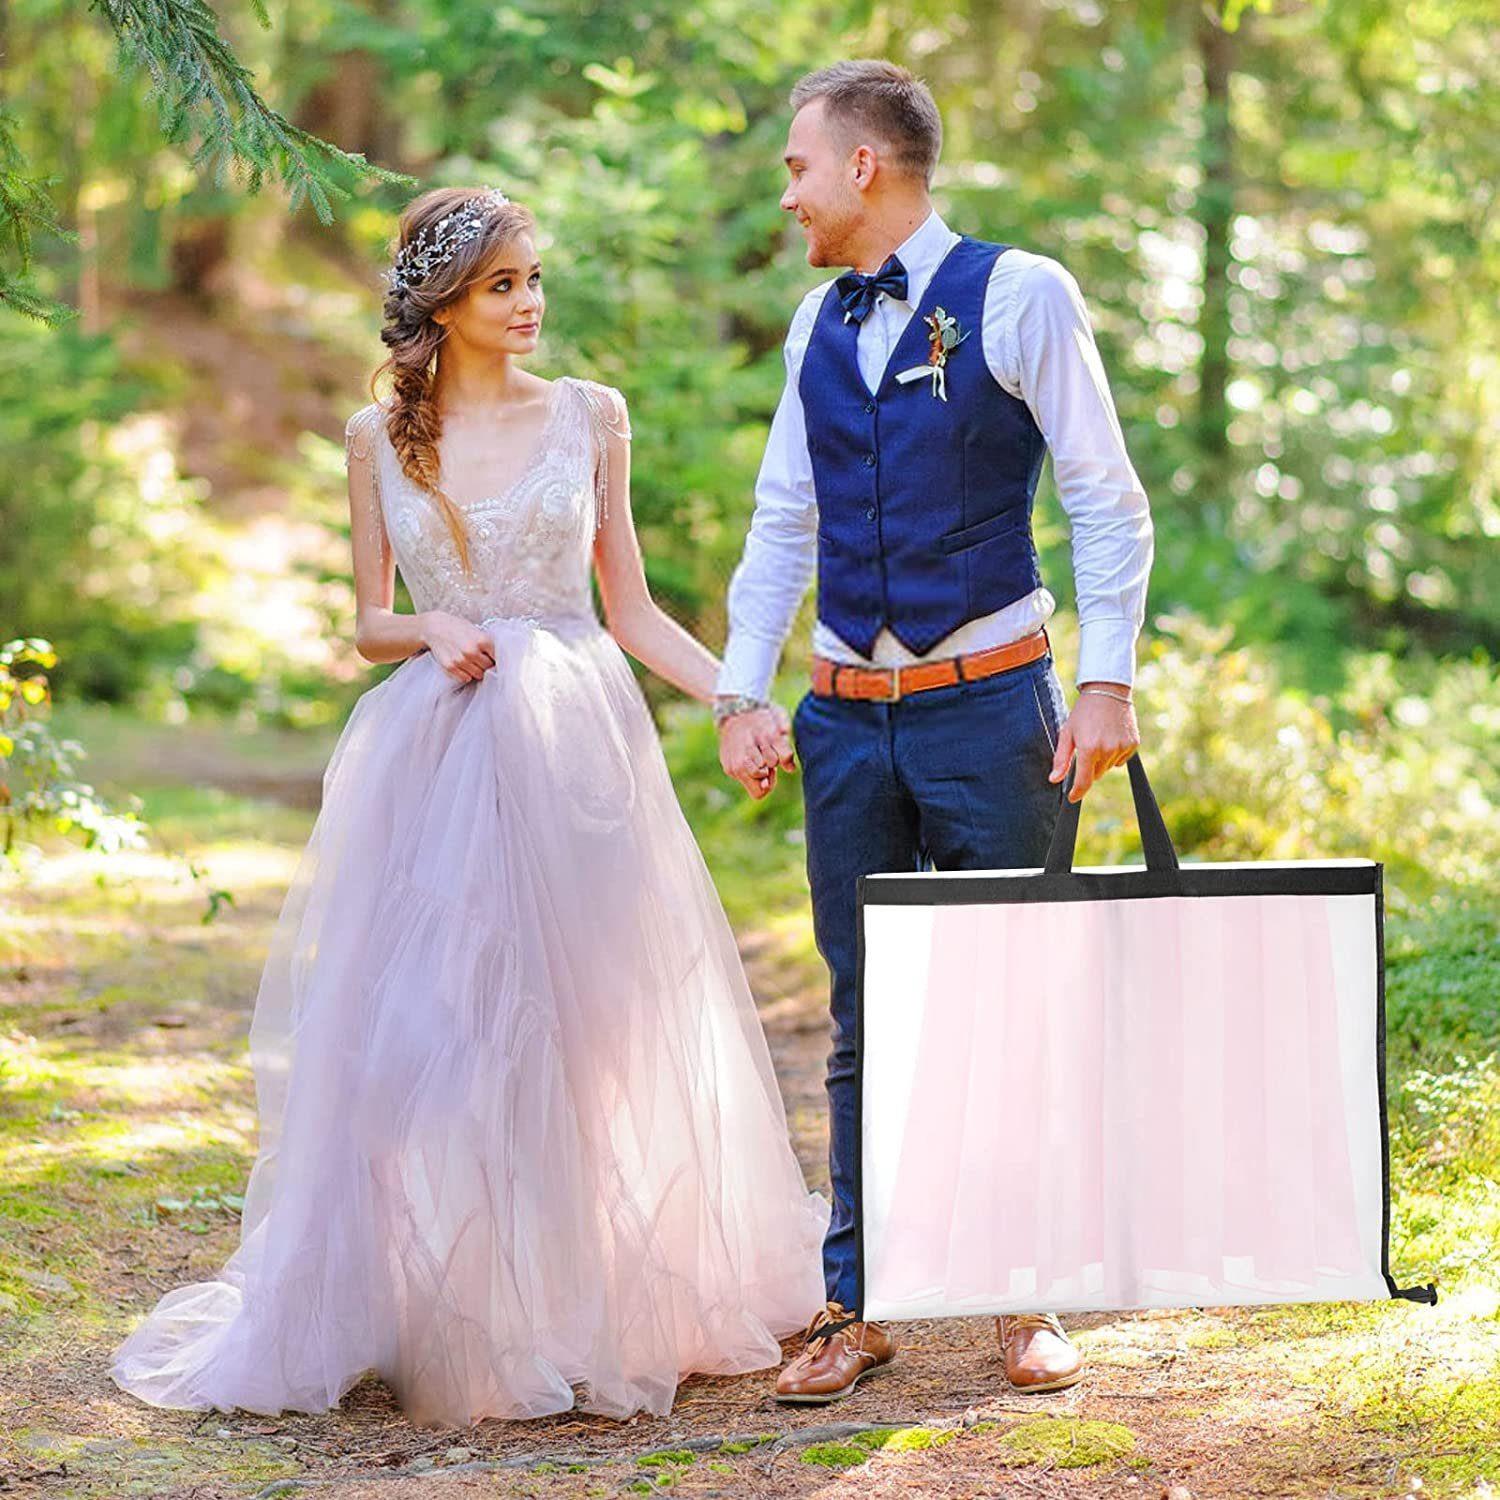 180cm Kleidersack Kleidersäcke Hochzeitskleid Brautkleider Anzüge Schutz In Rosa 